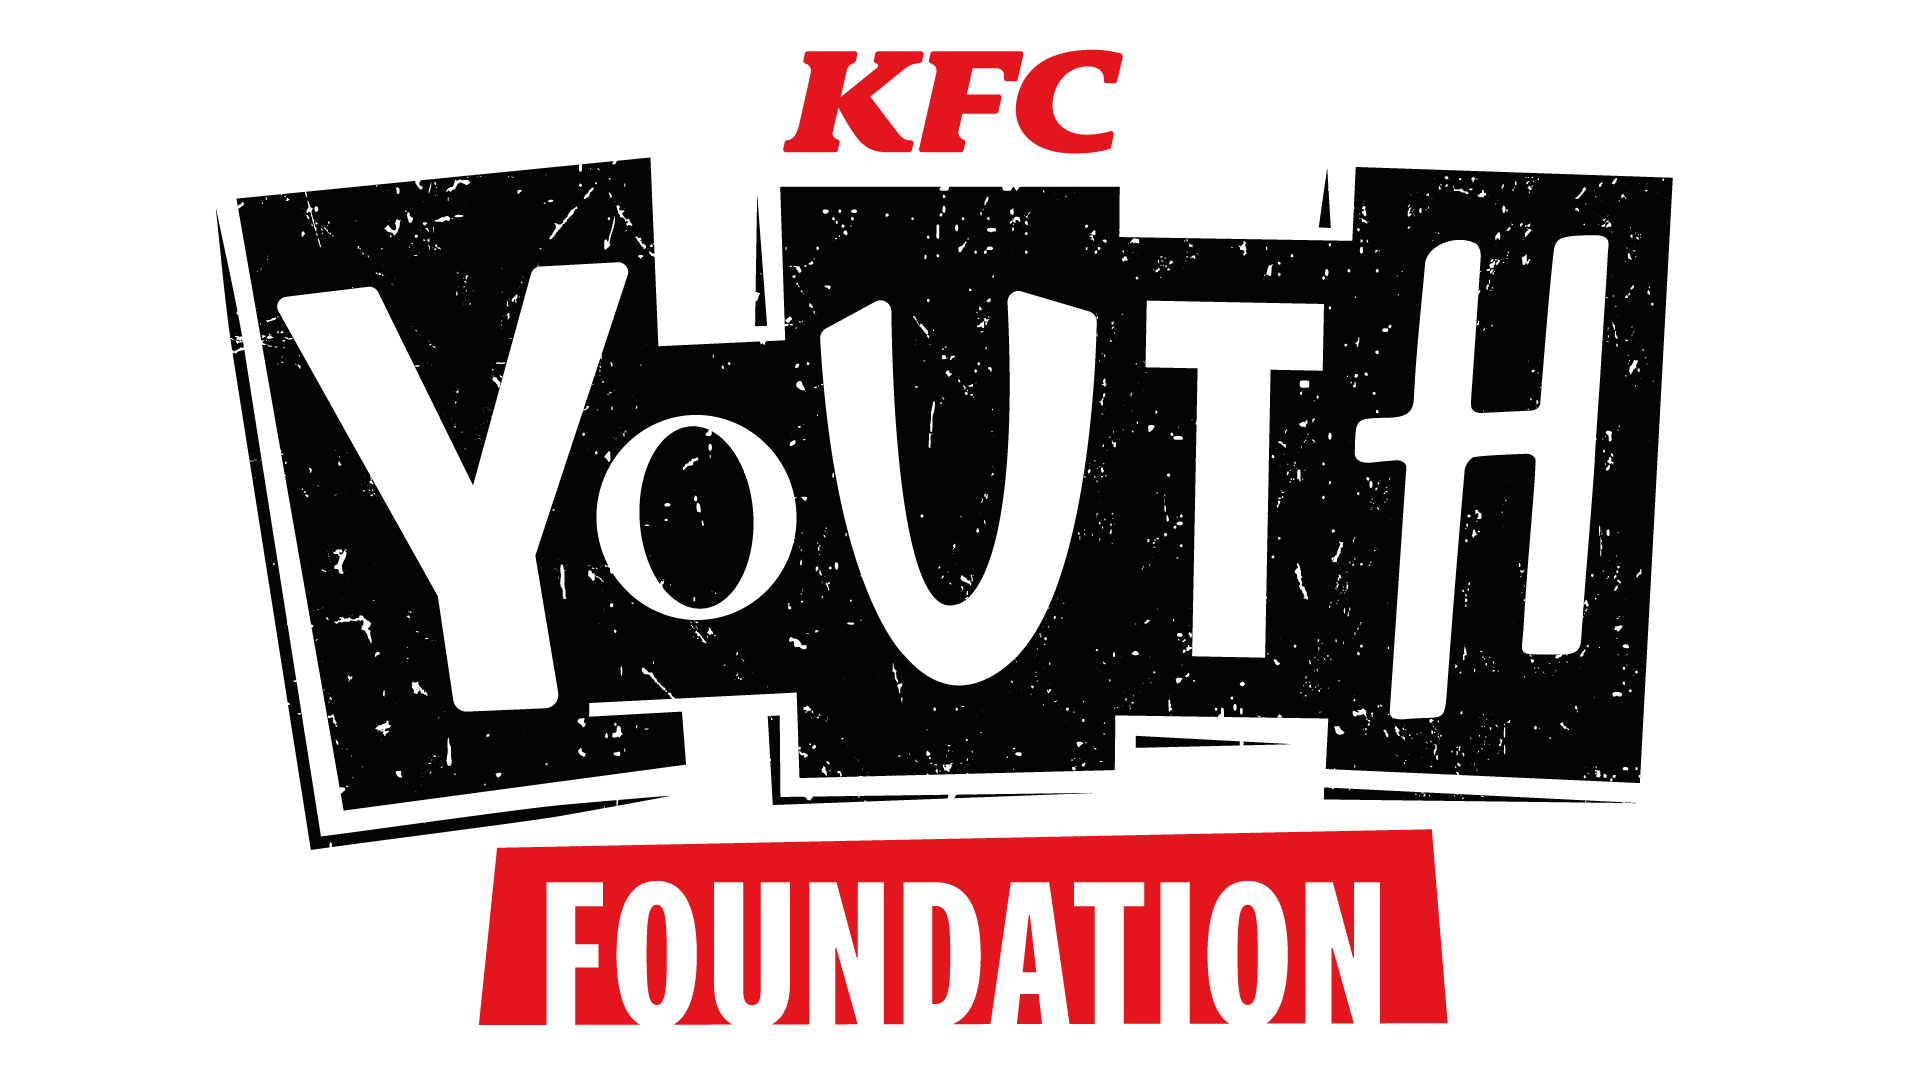 The KFC Youth Foundation logo